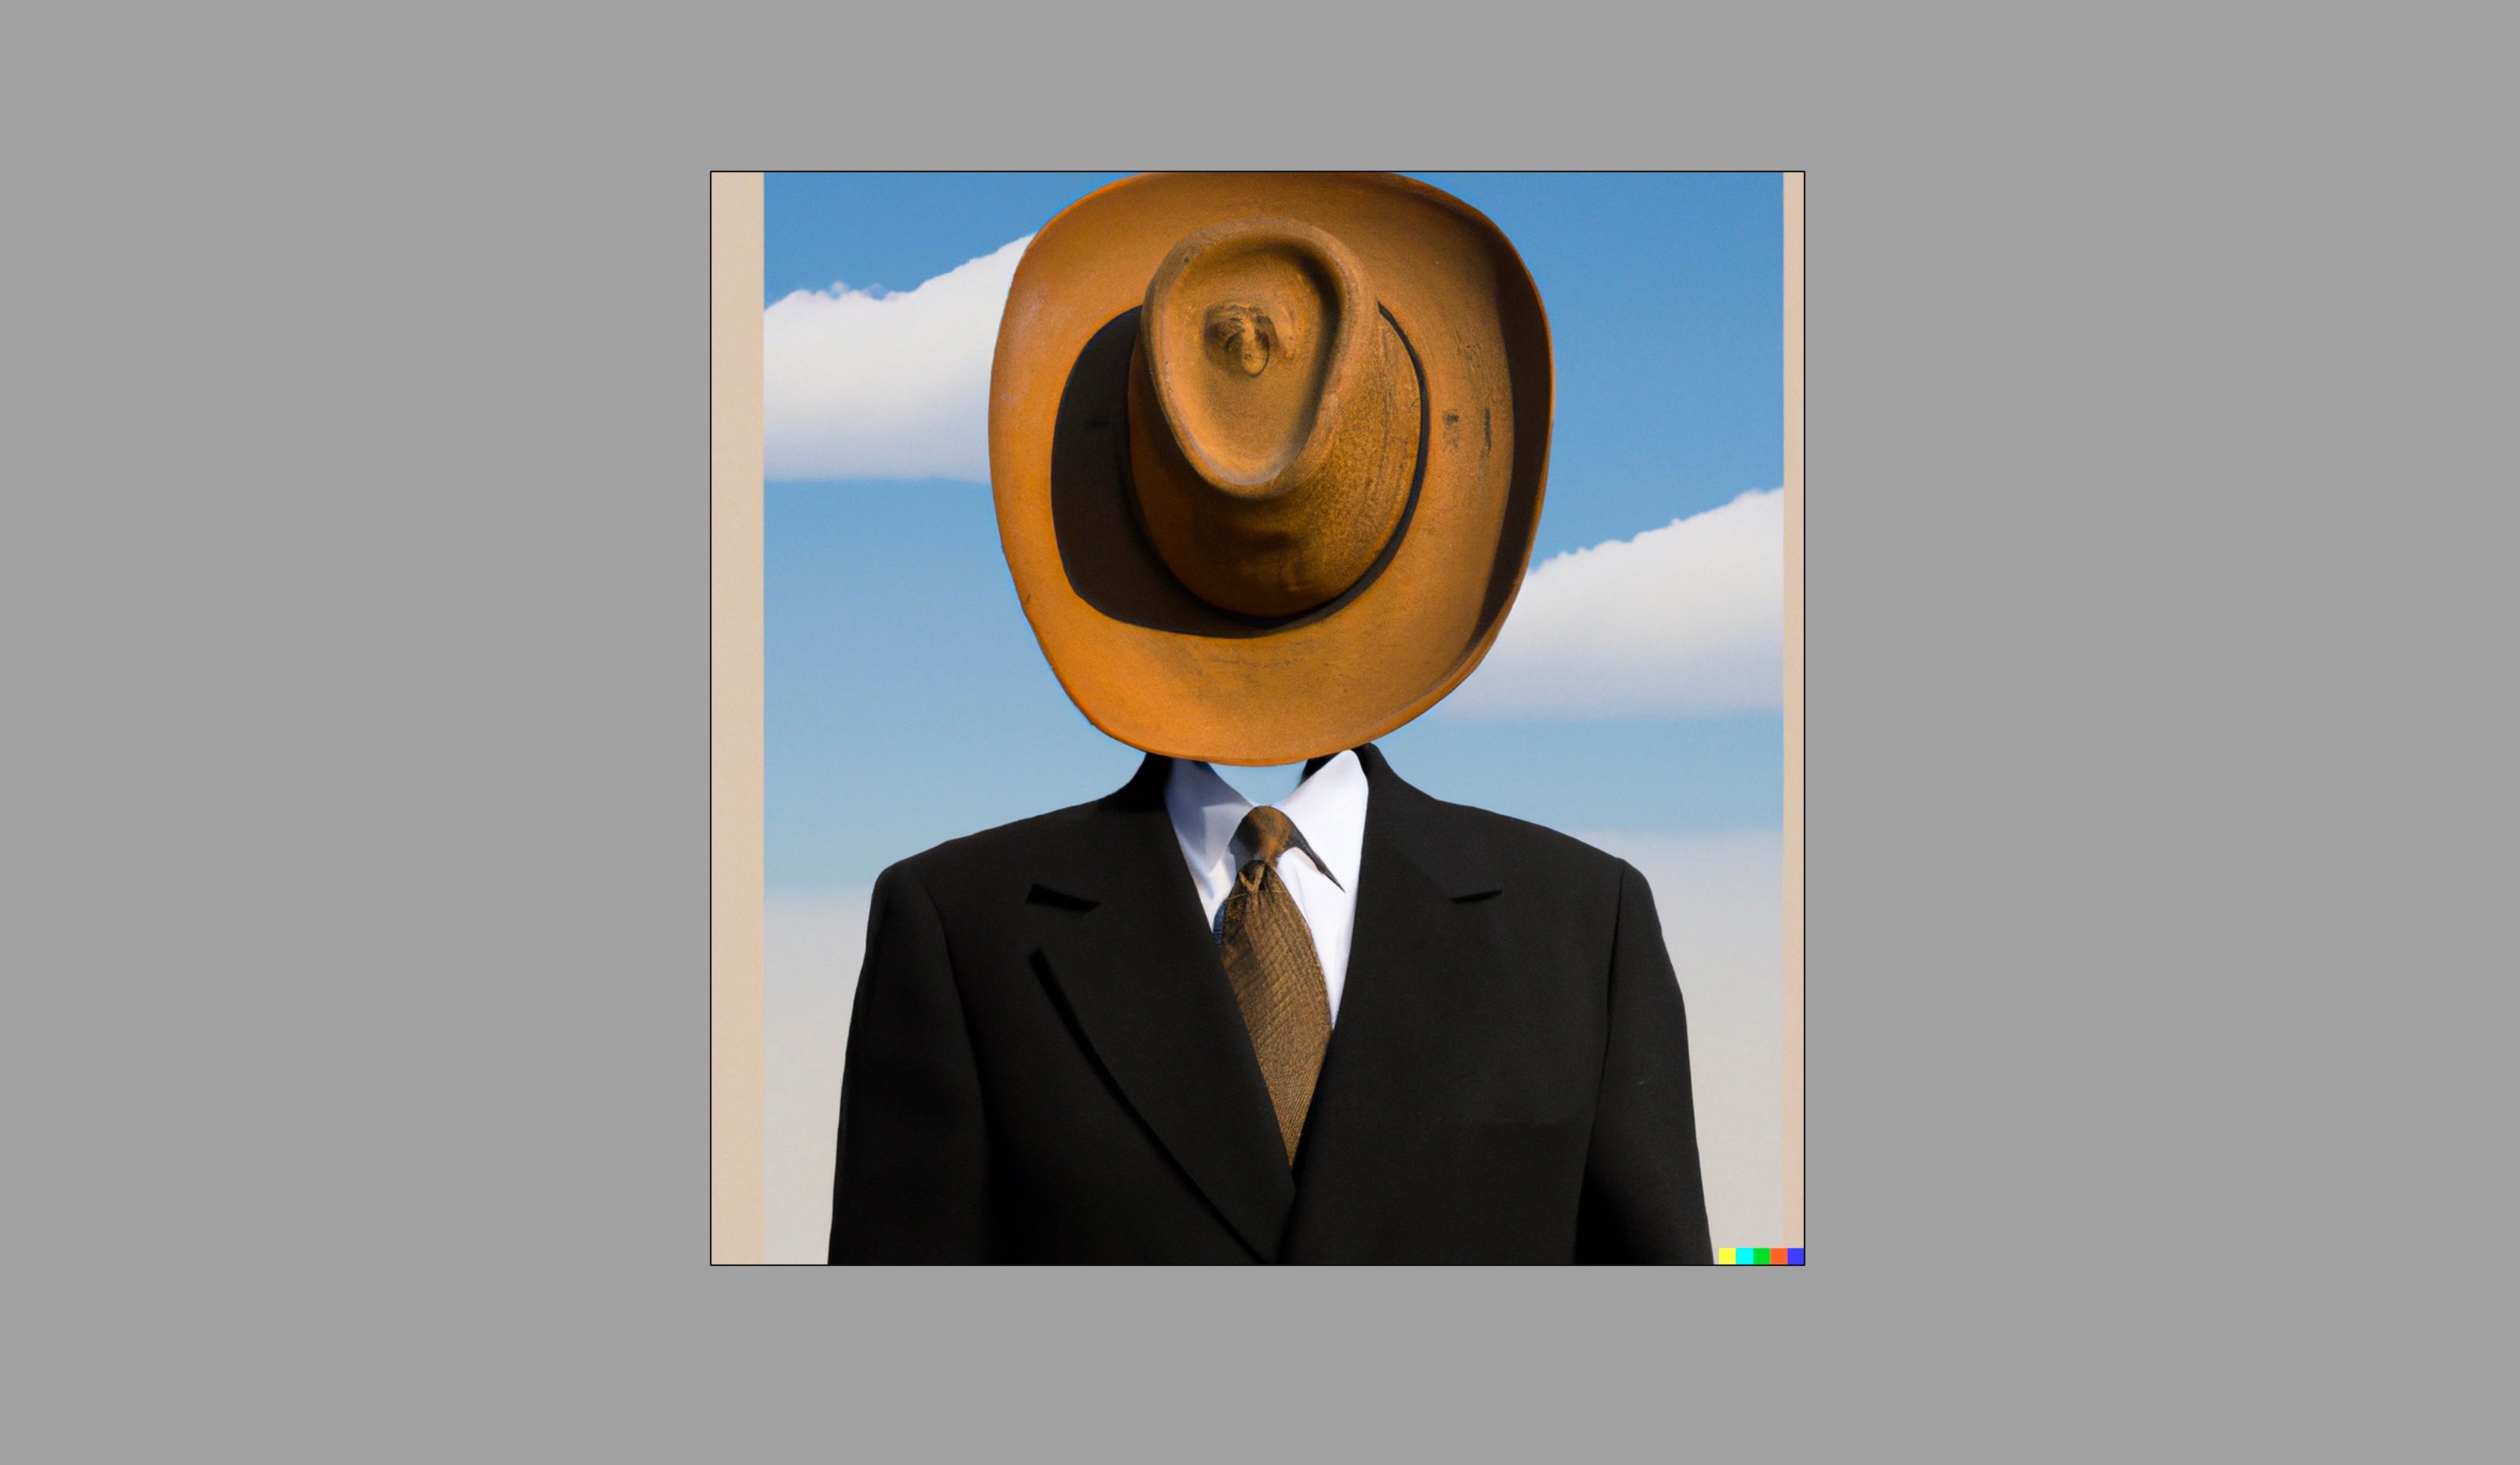 Un homme en costume, le visage couvert d'un chapeau de cow-boy